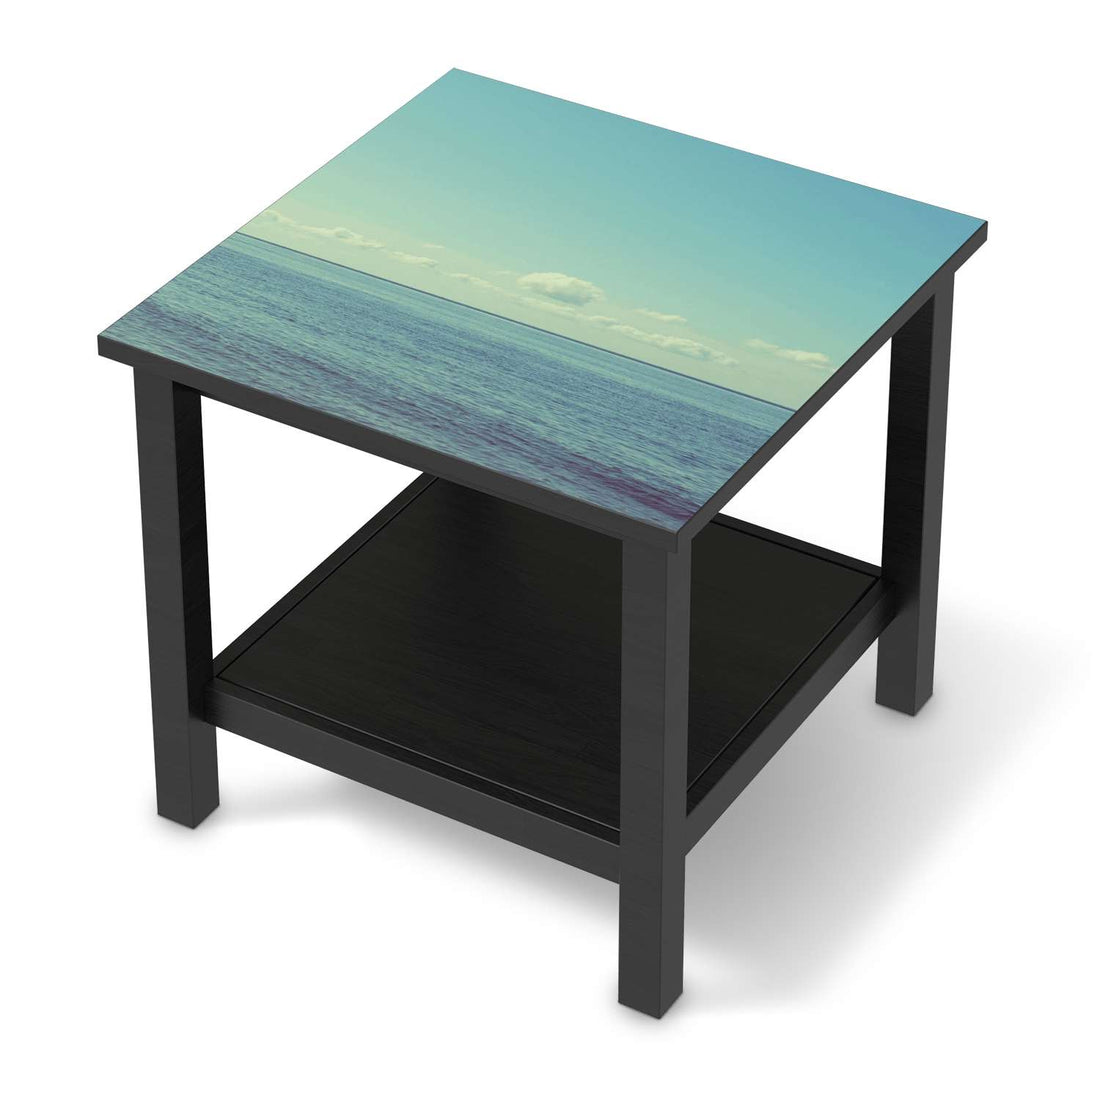 Möbel Klebefolie Mehr Meer - IKEA Hemnes Beistelltisch 55x55 cm - schwarz